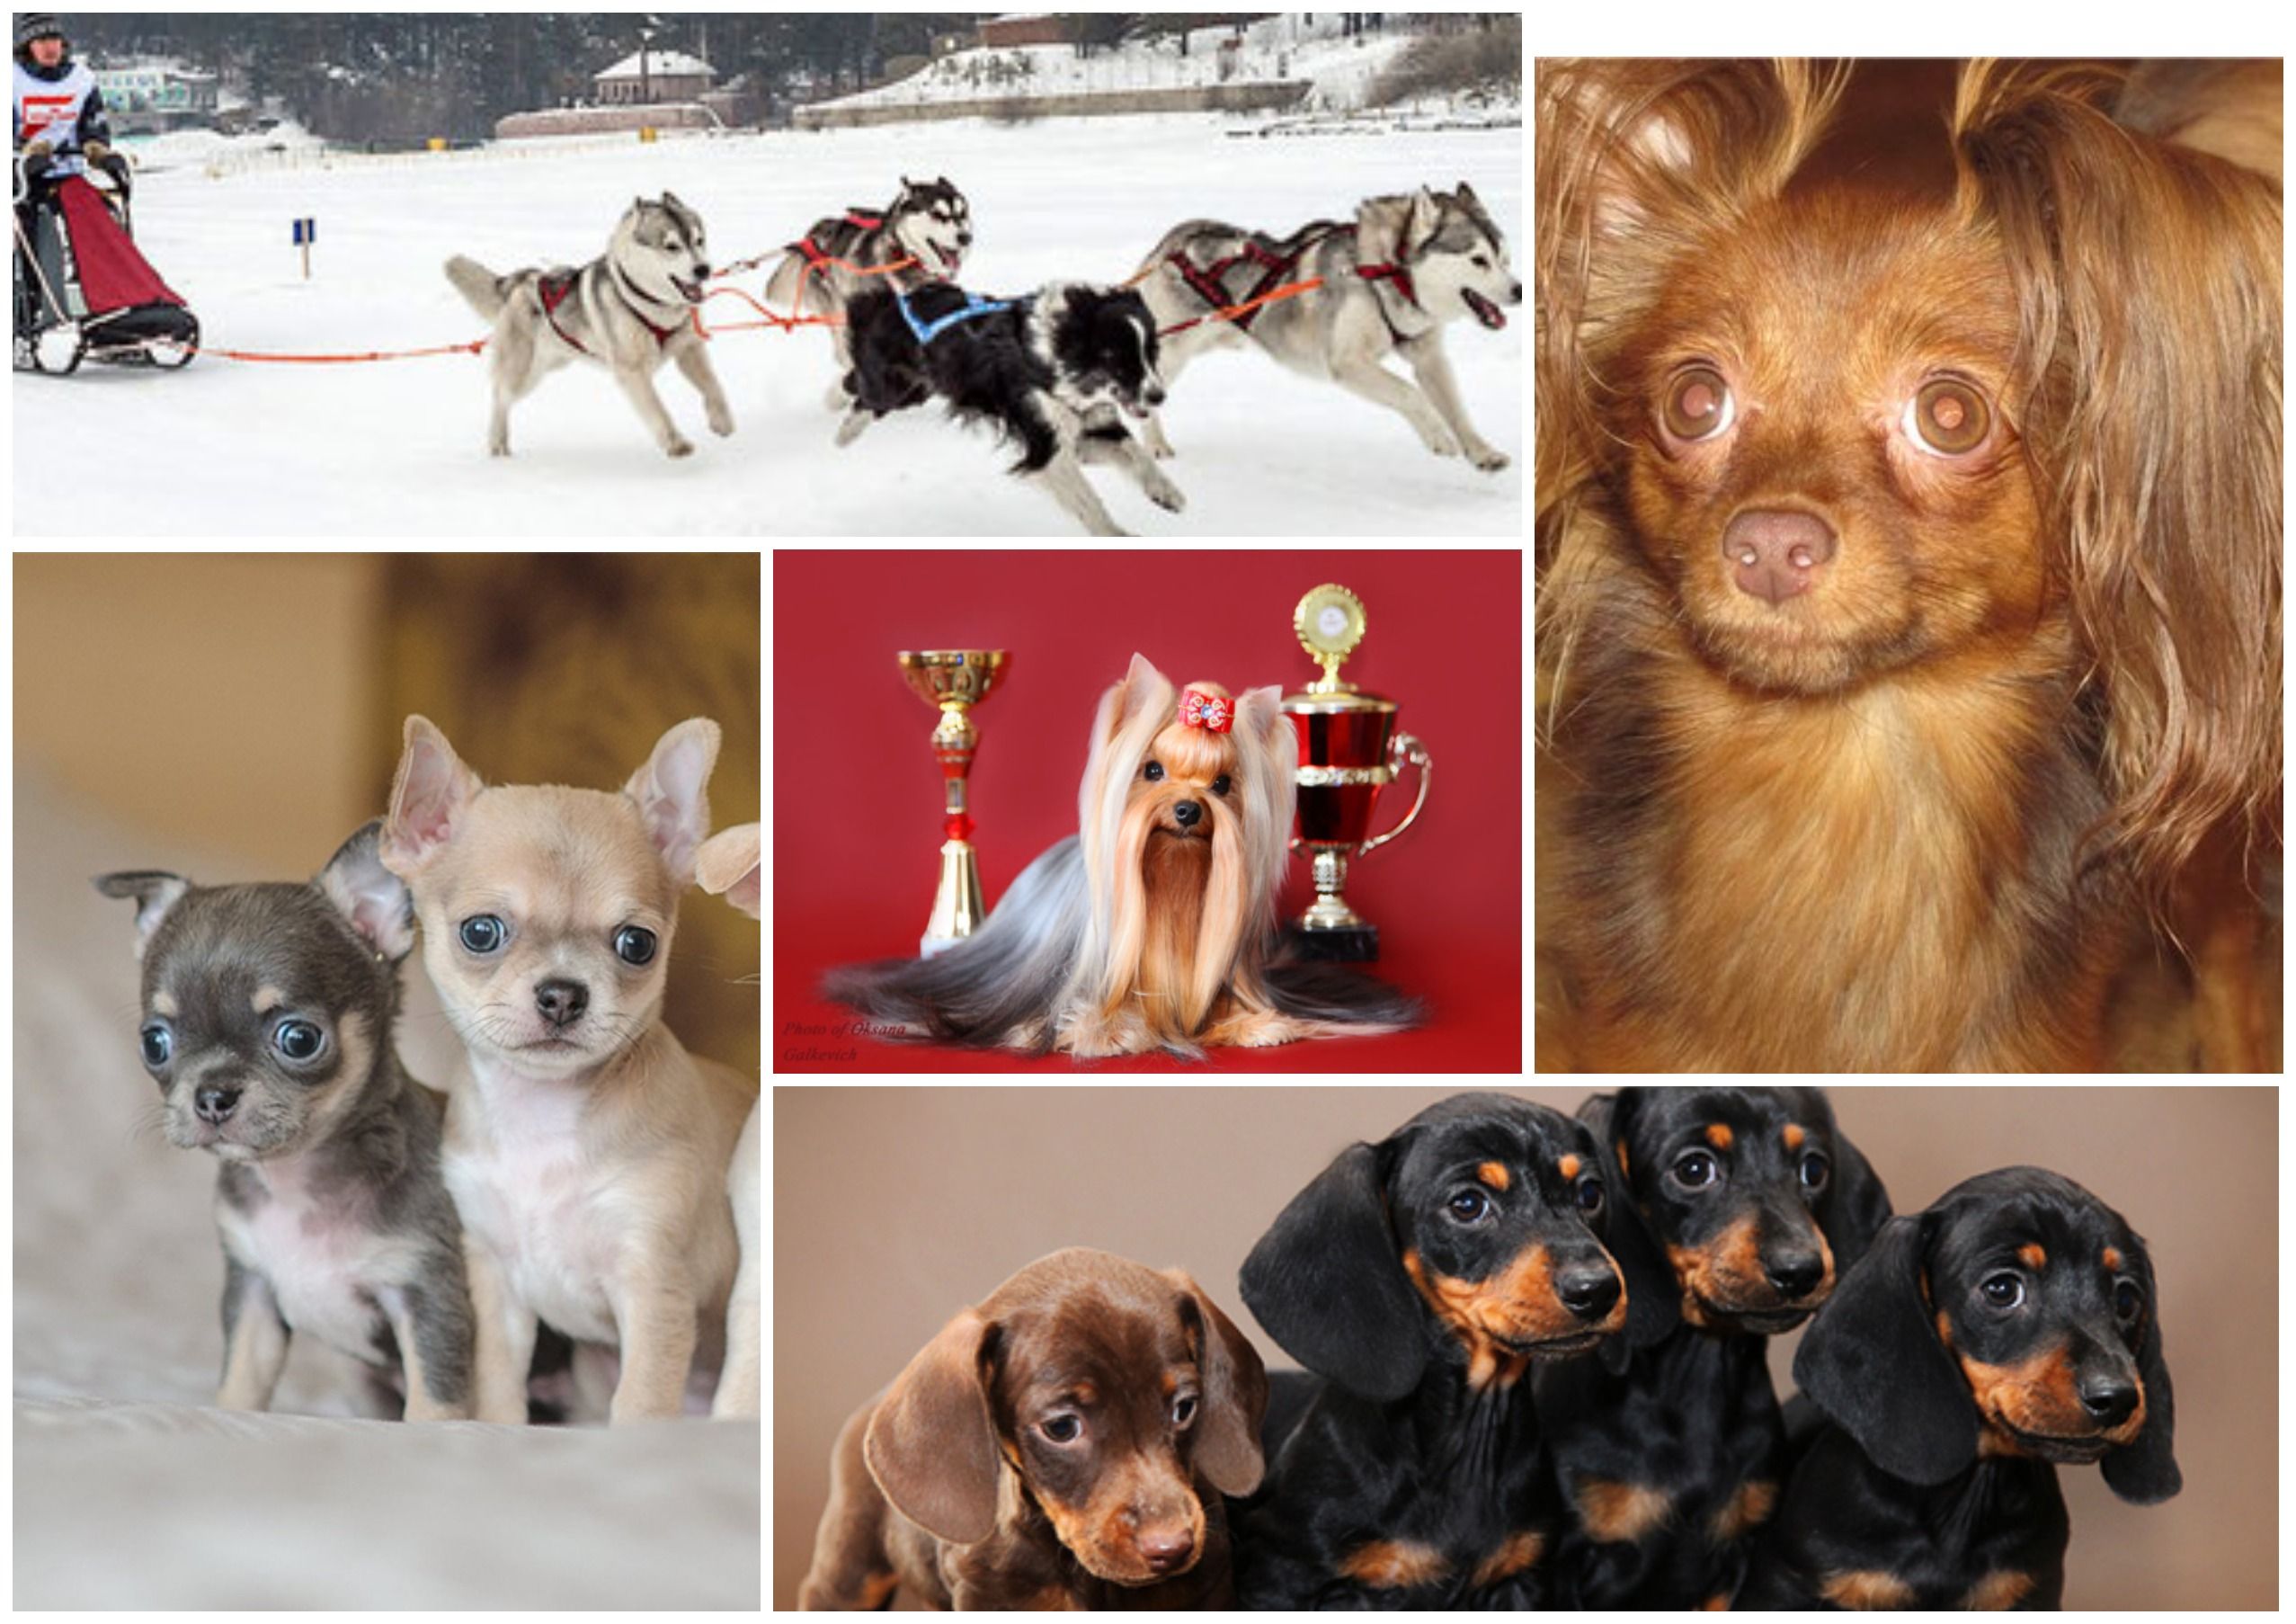 Модные породы собак: самые известные в России